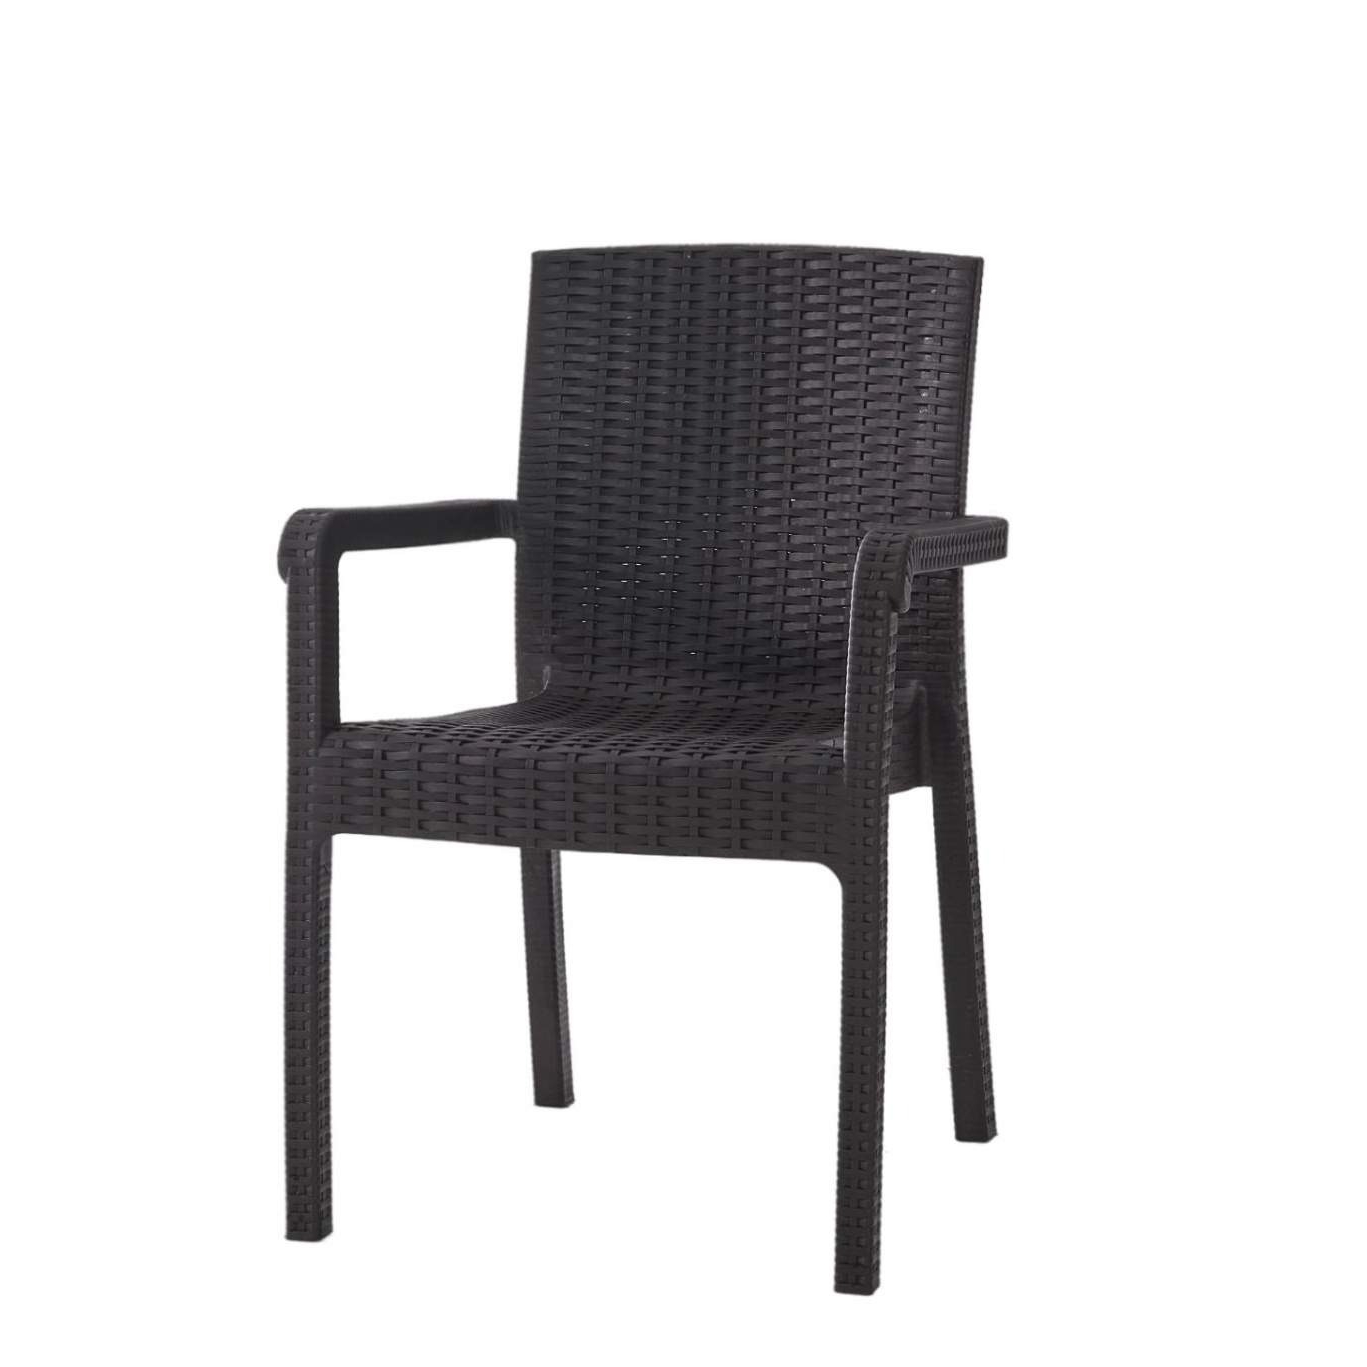 Кресло Heniver Vector темно-коричневое 58х45х85 см кресло heniver babel темно коричневое 62х42х85 см